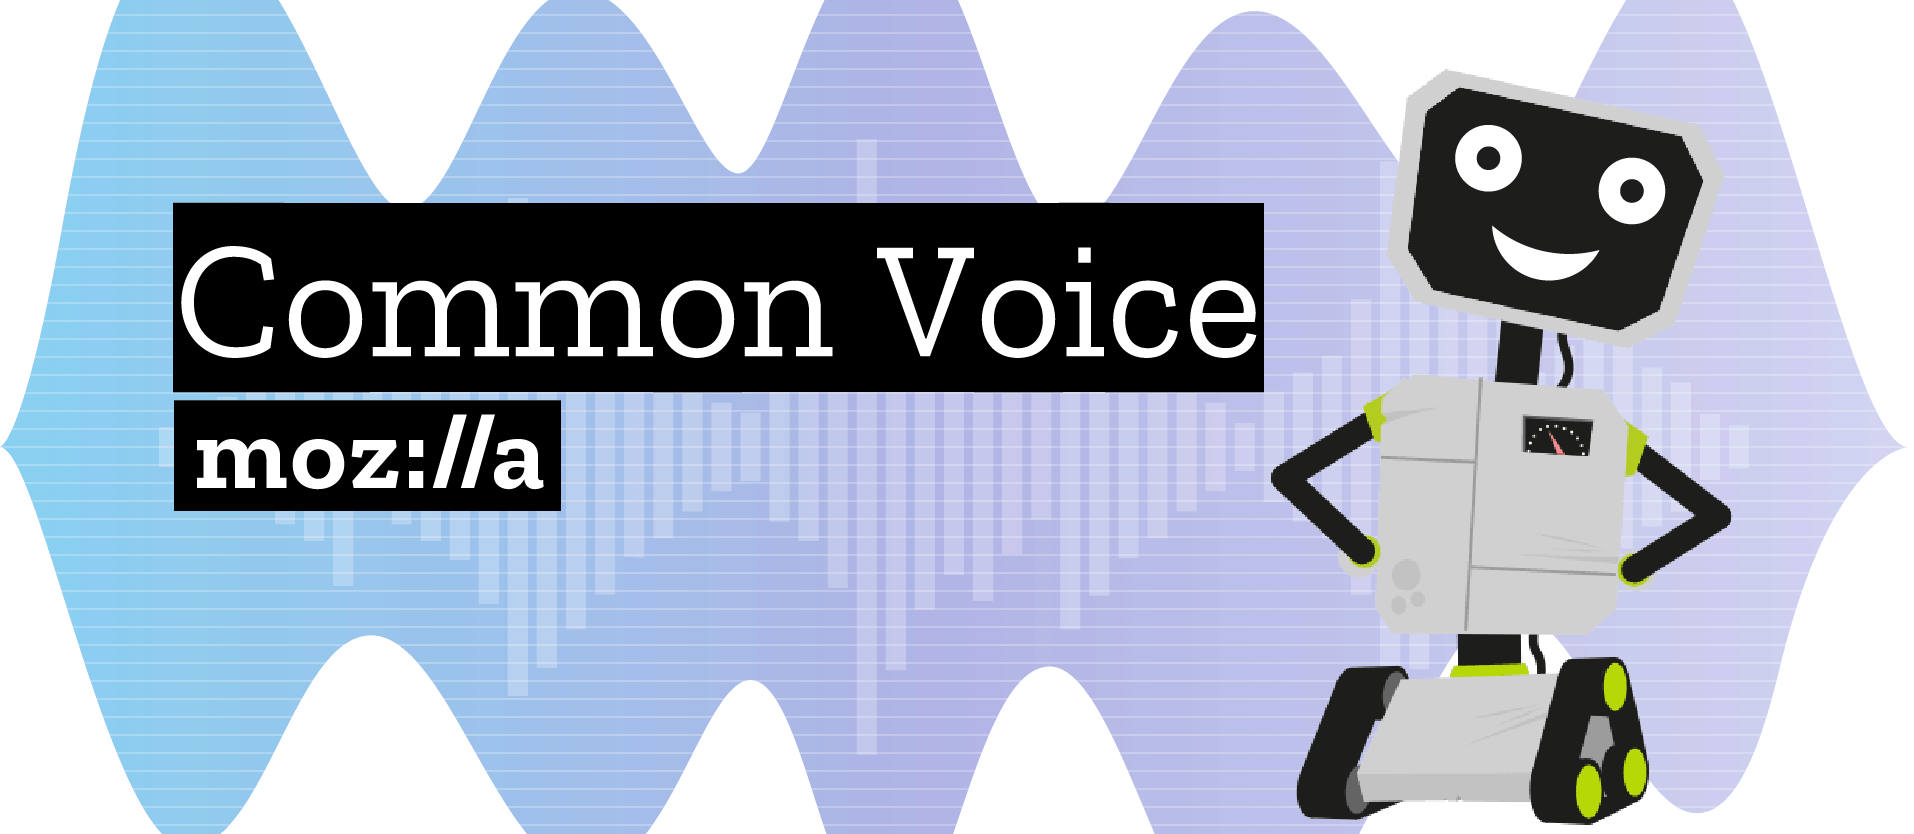 common voice mozilla